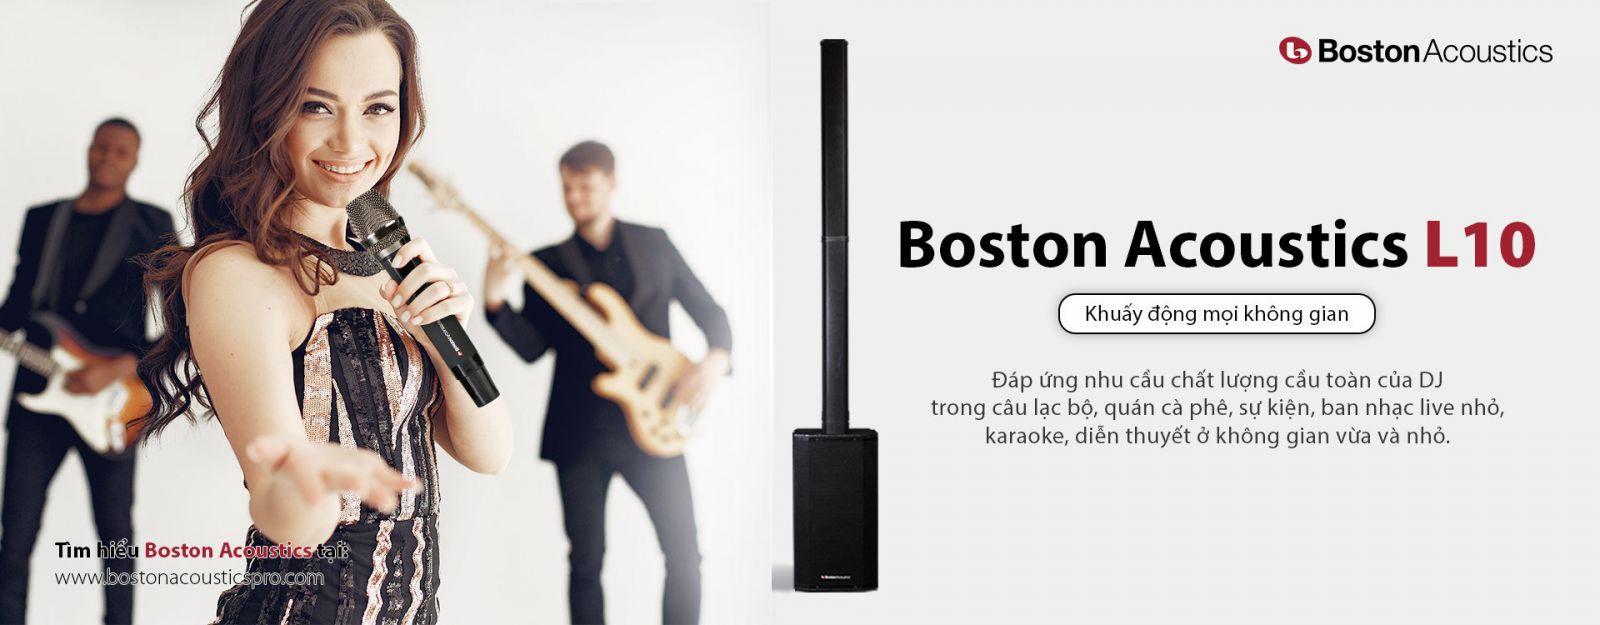 LOA Boston Acoustics L10 HÀNG CHÍNH HÃNG NEW 100%